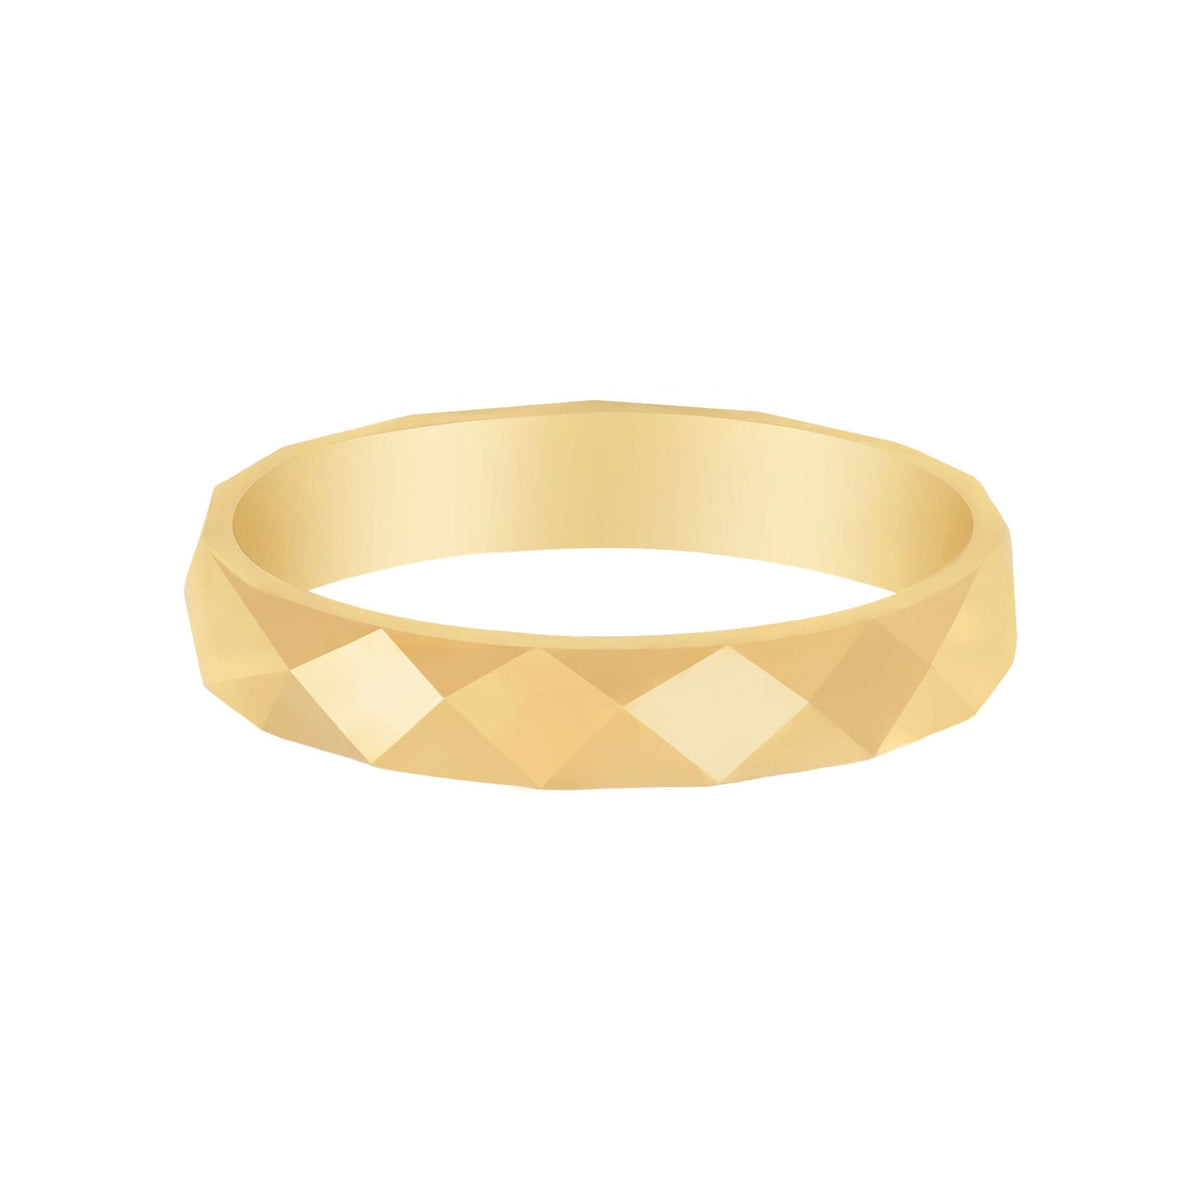 BohoMoon Stainless Steel Enlighten Ring Gold / US 4 / UK H / EUR 46 / (xxsmall)